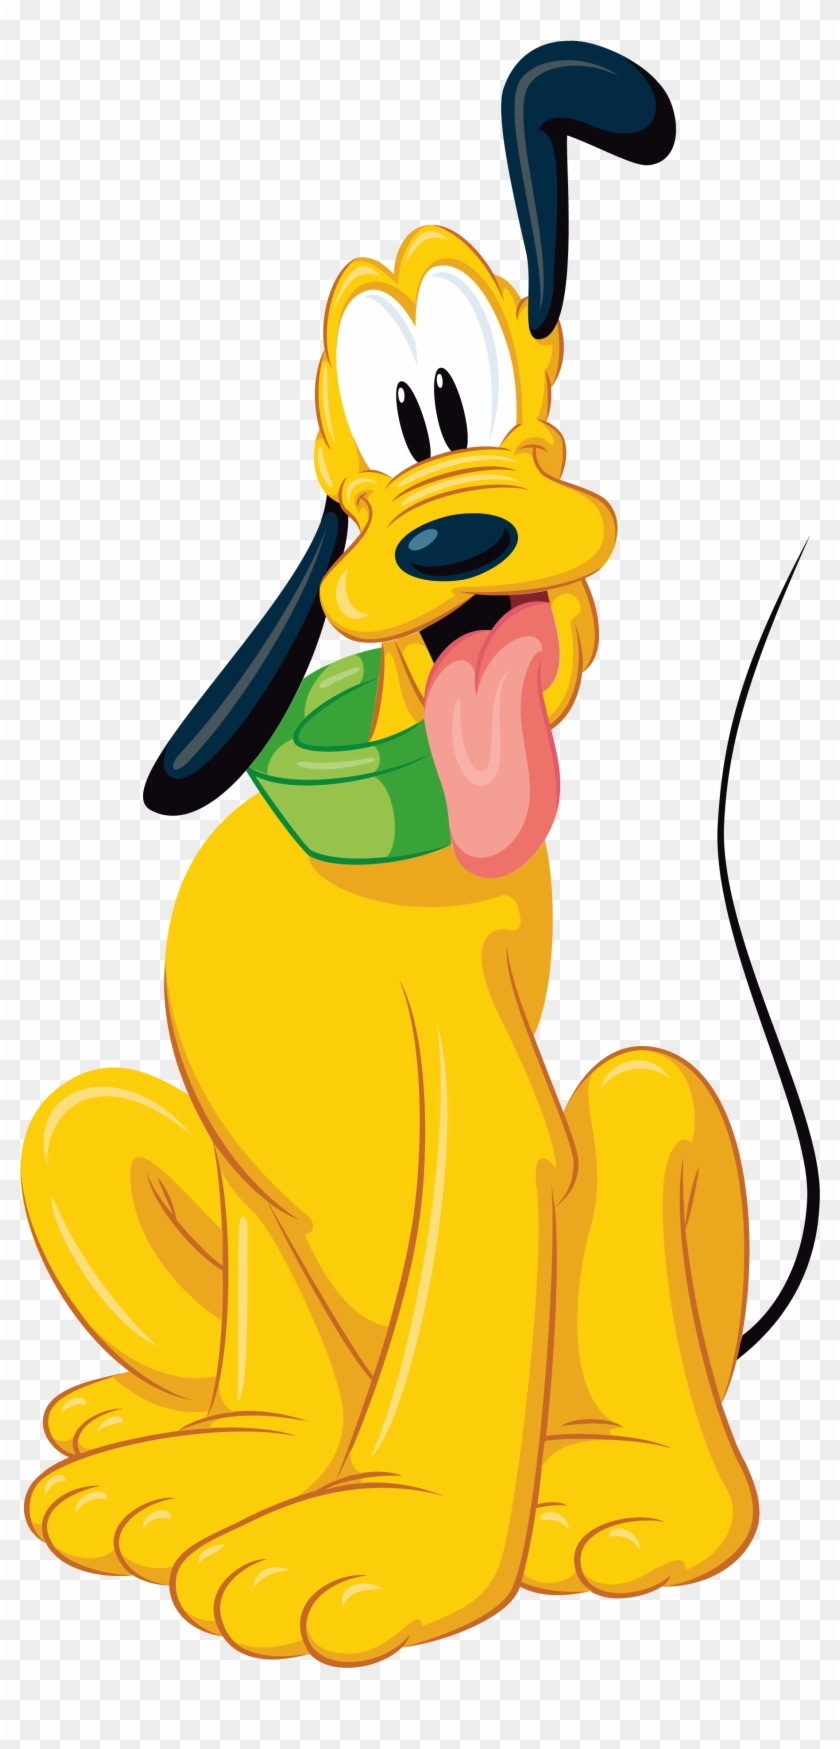 Pluto Disney Png Transparent Cartoon - Pluto Disney Png Clipart #542555